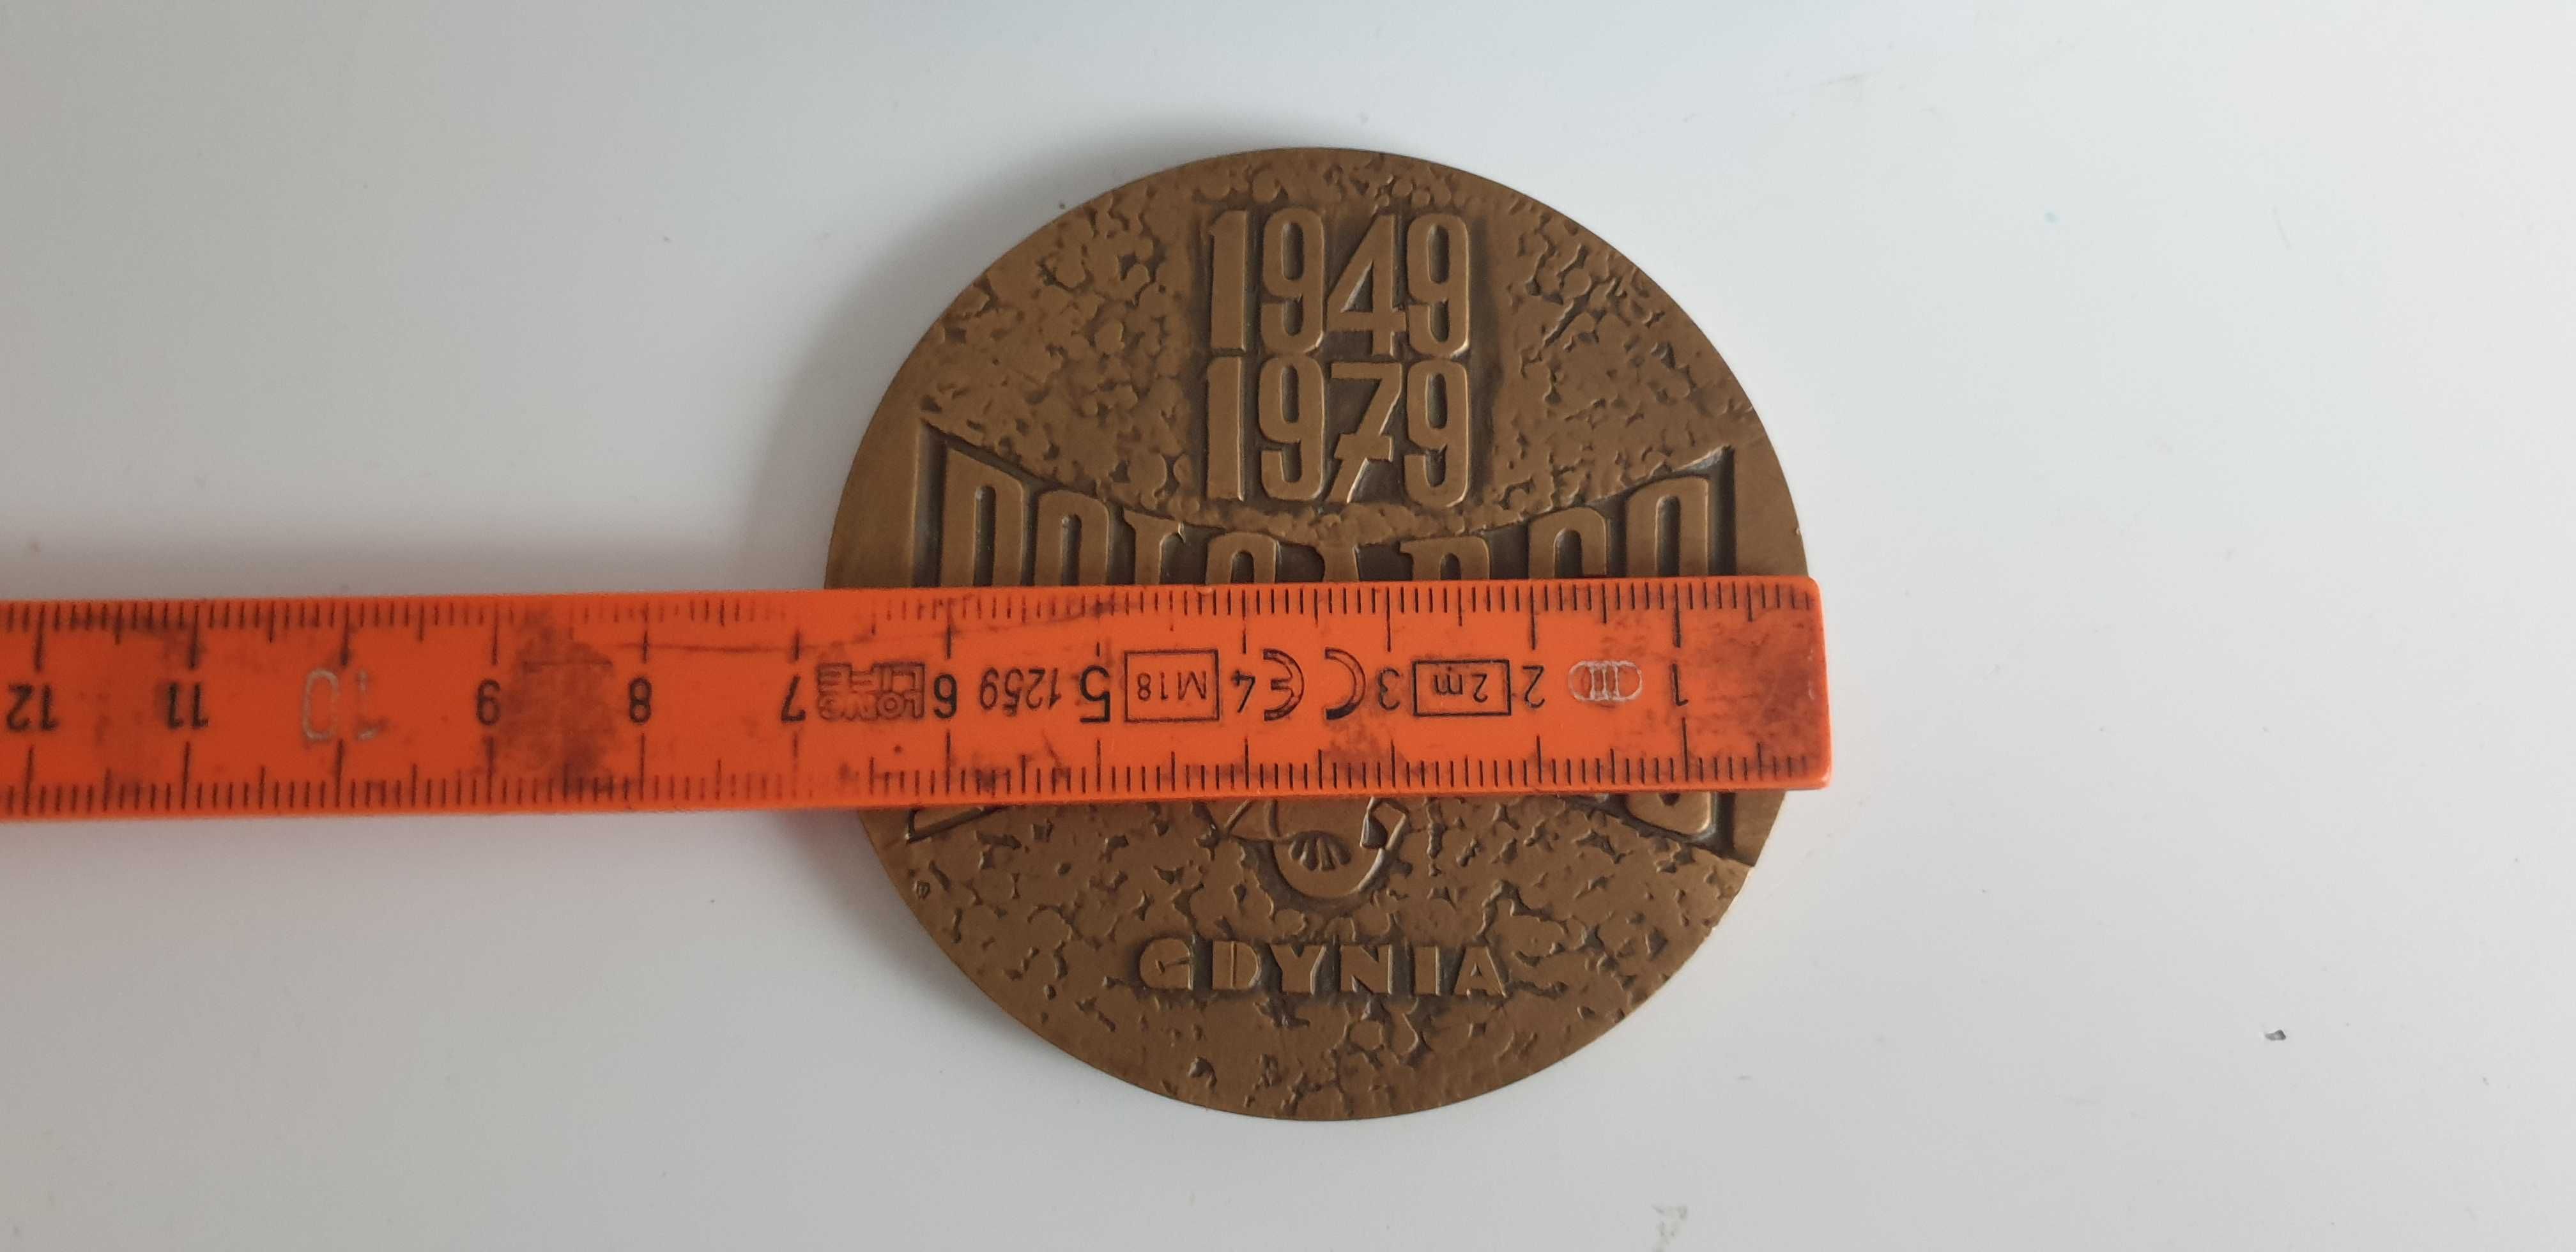 Starocie z Gdyni - Gdynia - medal POLCARGO 1979r.